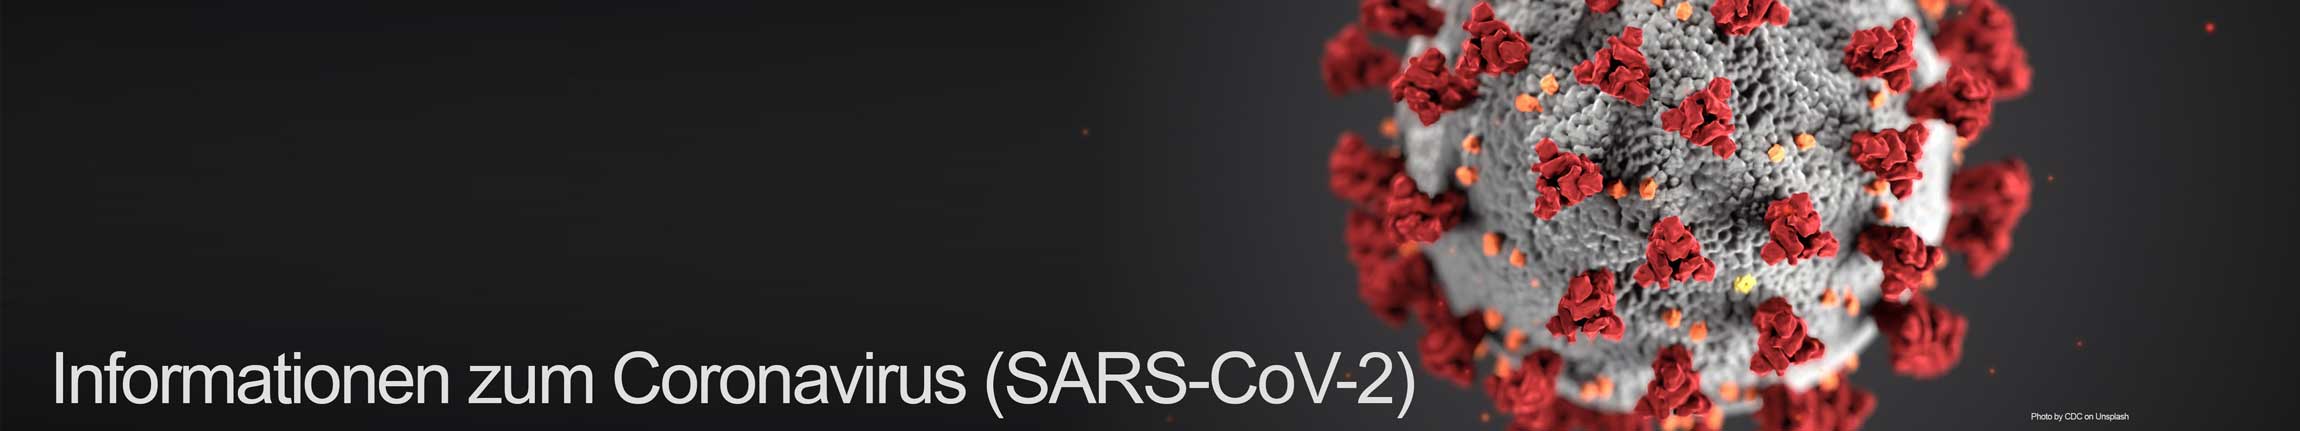 Informationen zum Coronavirus (SARS-CoV-2)